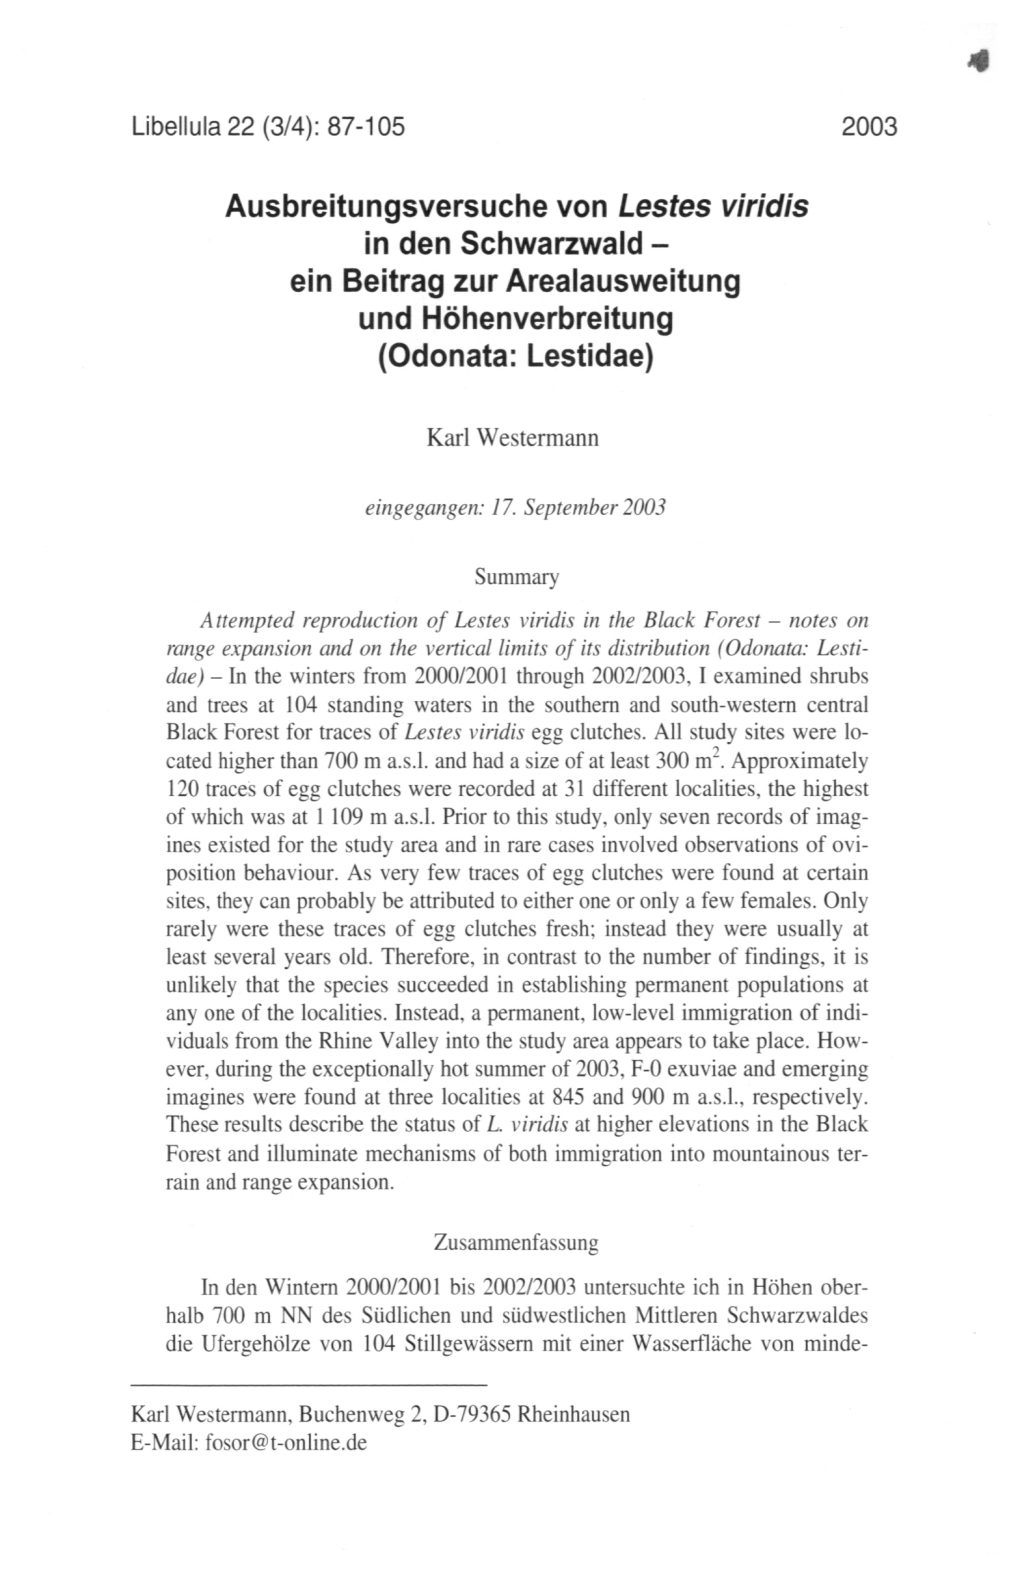 Ausbreitungsversuche Von Lestes Viridis in Den Schwarzwald- Ein Beitrag Zur Arealausweitung Und Höhenverbreitung (Odonata: Lestidae)